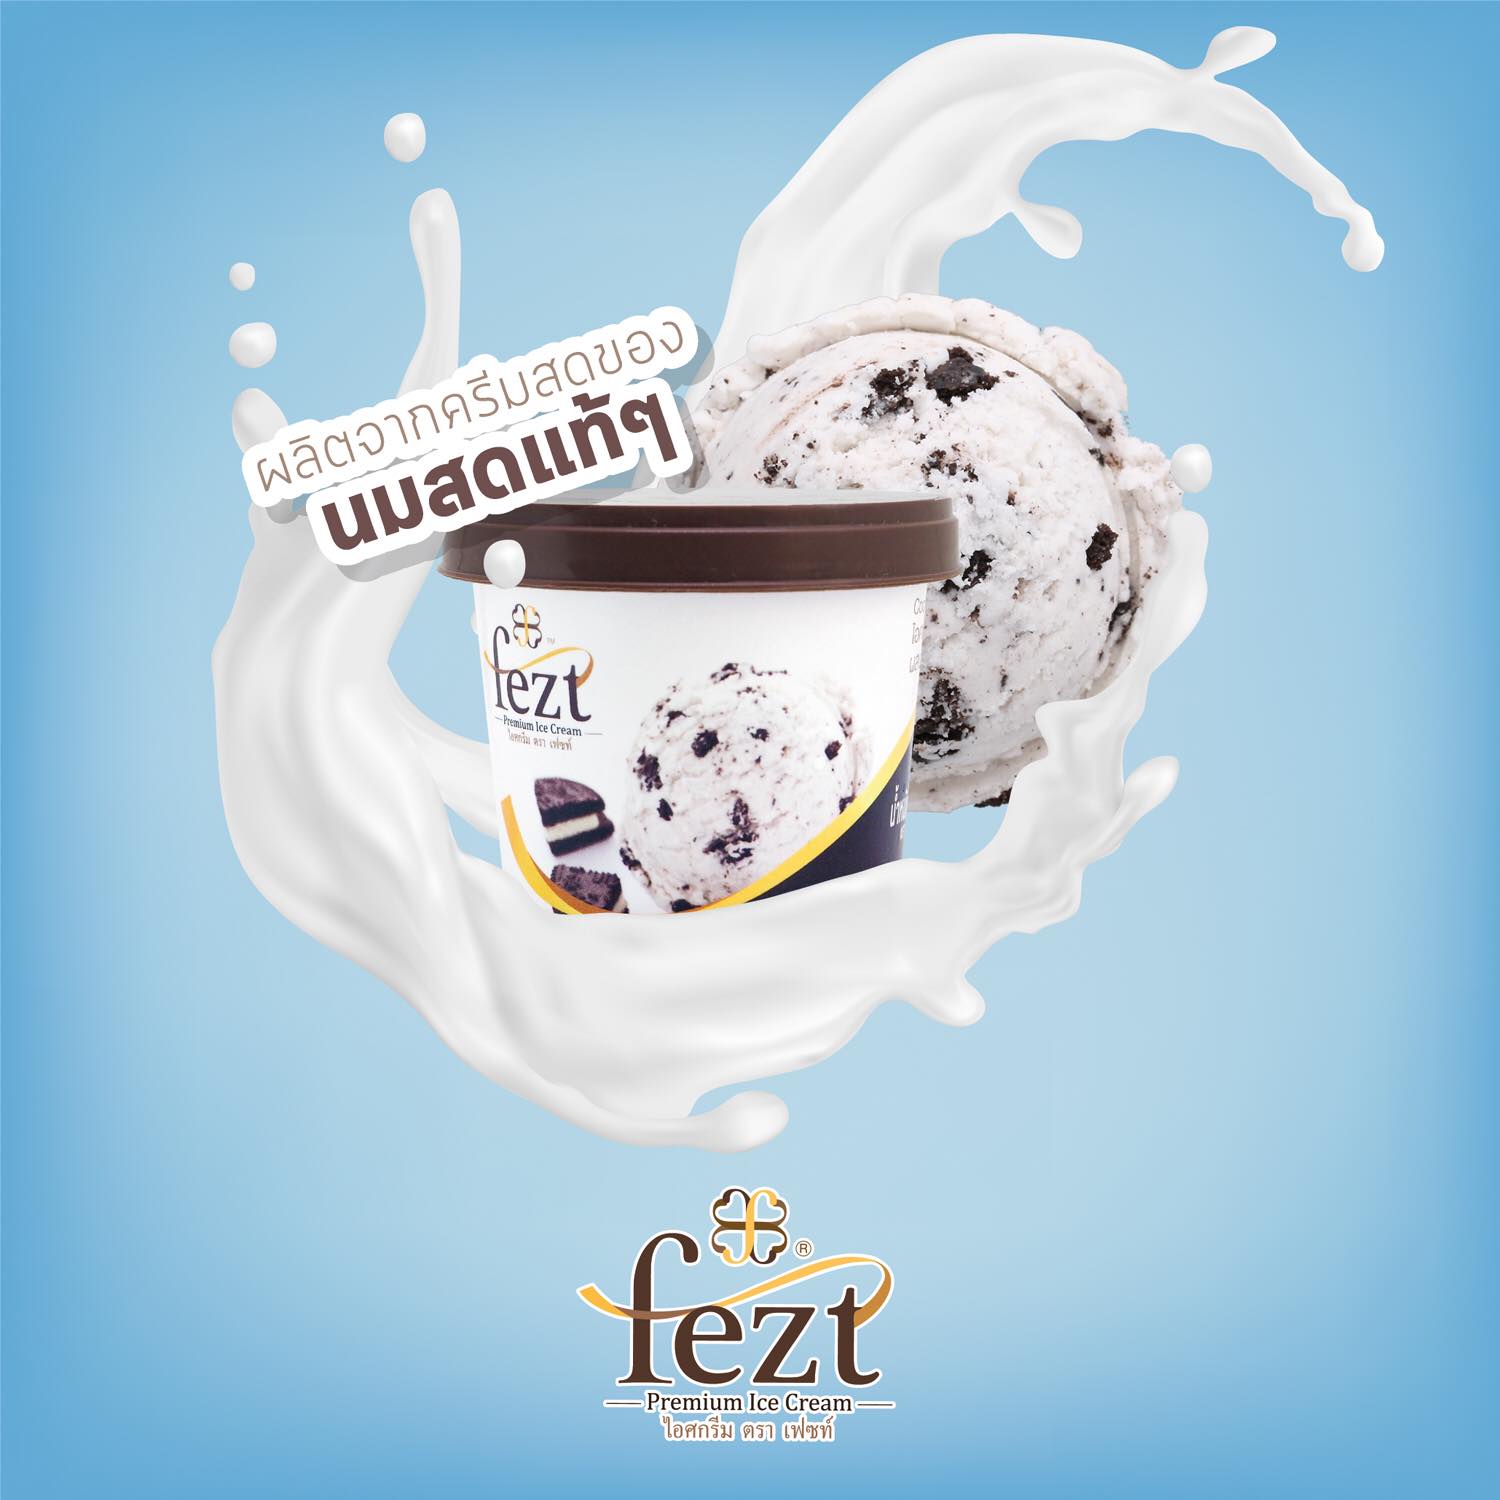 เฟซท์ ไอศกรีมพรีเมี่ยม รสคุ้กกี้แอนด์ครีม (Fezt Premium Ice Cream) แบบถ้วย 75 กรัม บรรจุแพ็คละ 12 ถ้วย